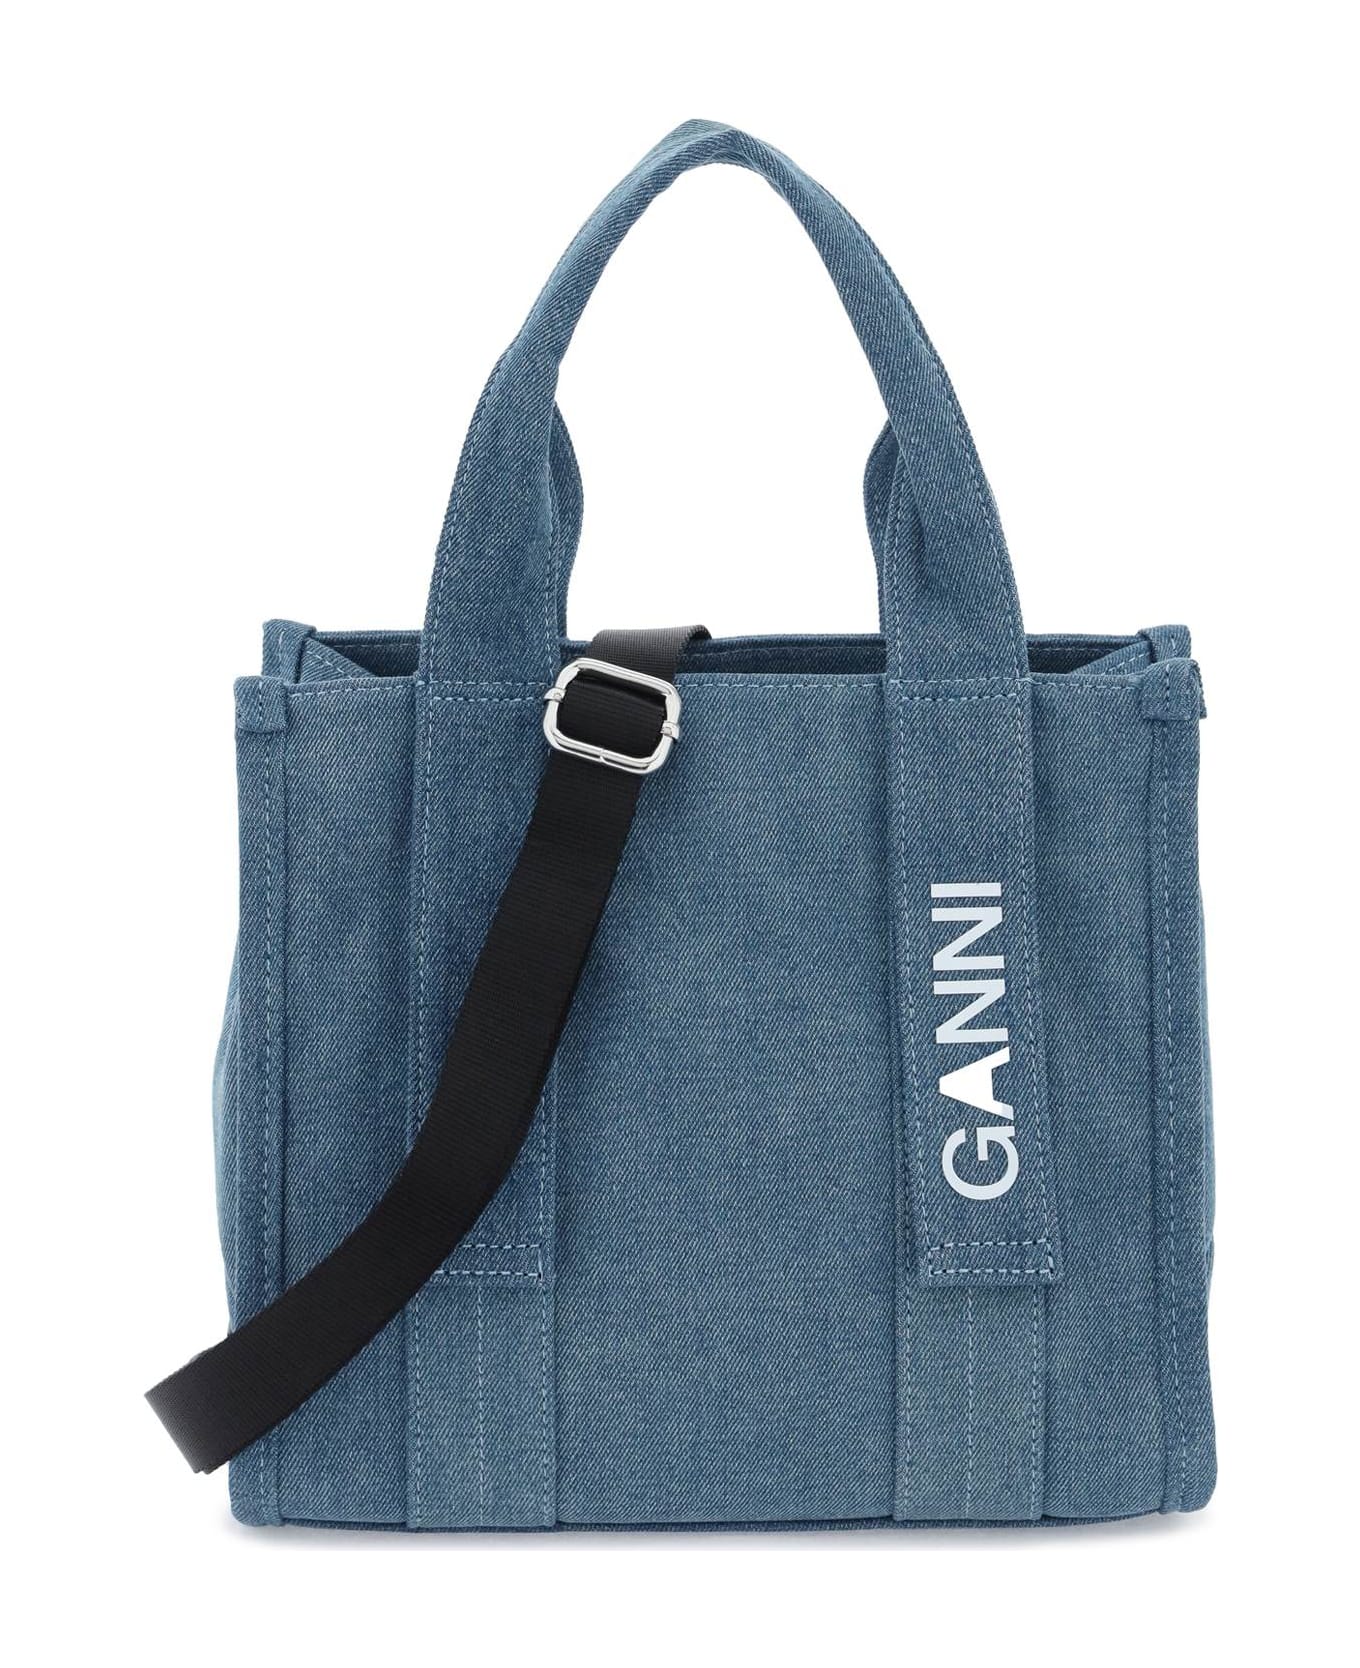 Ganni Light Blue Denim Bag - DENIM